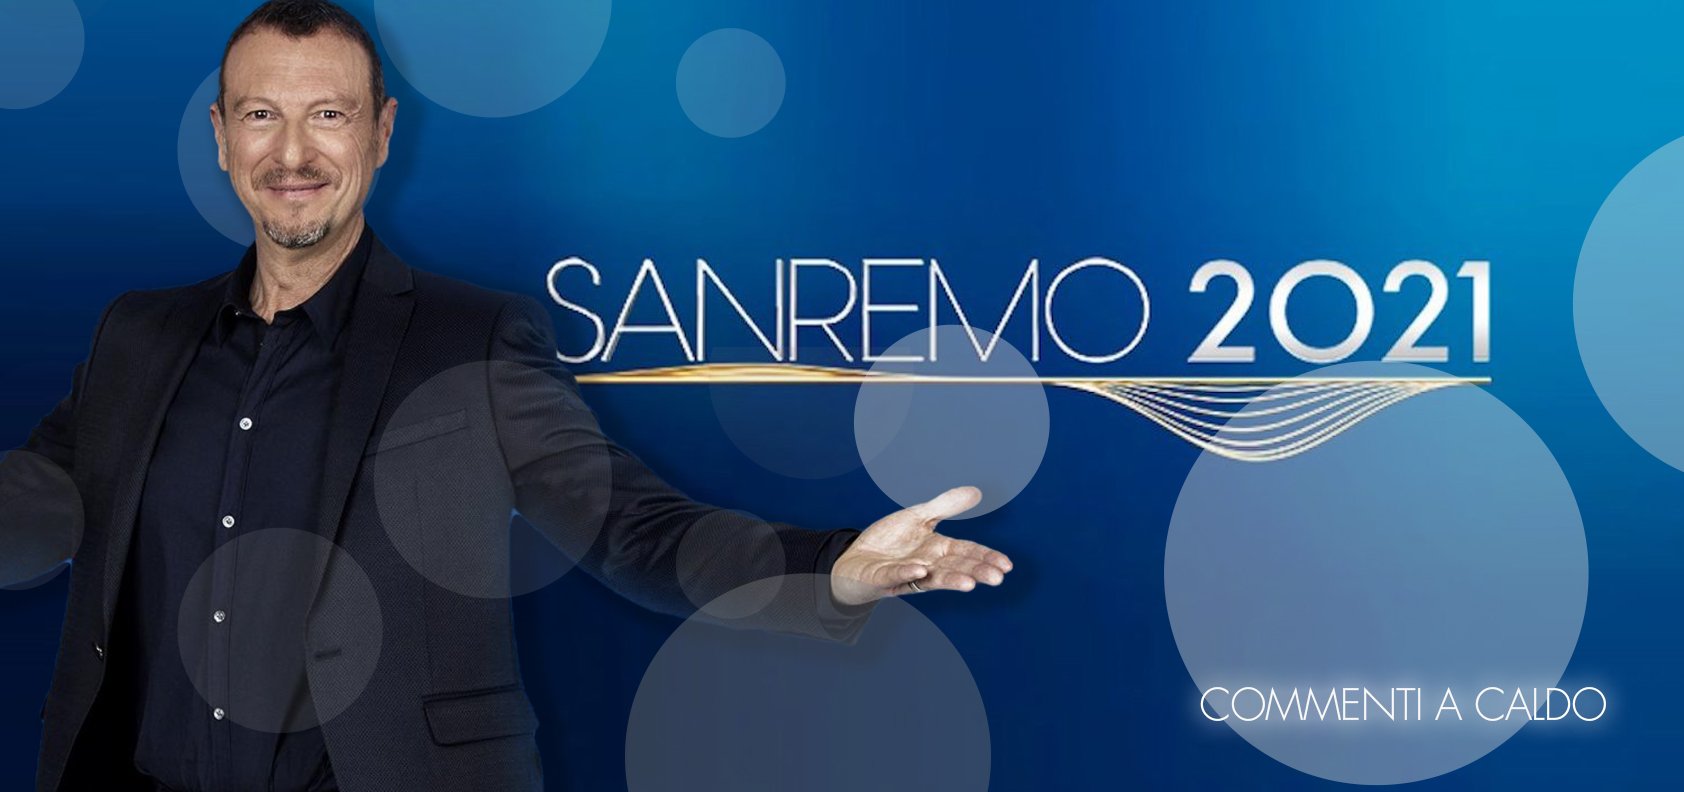 Sanremo 2021, la finale: commenti a caldo